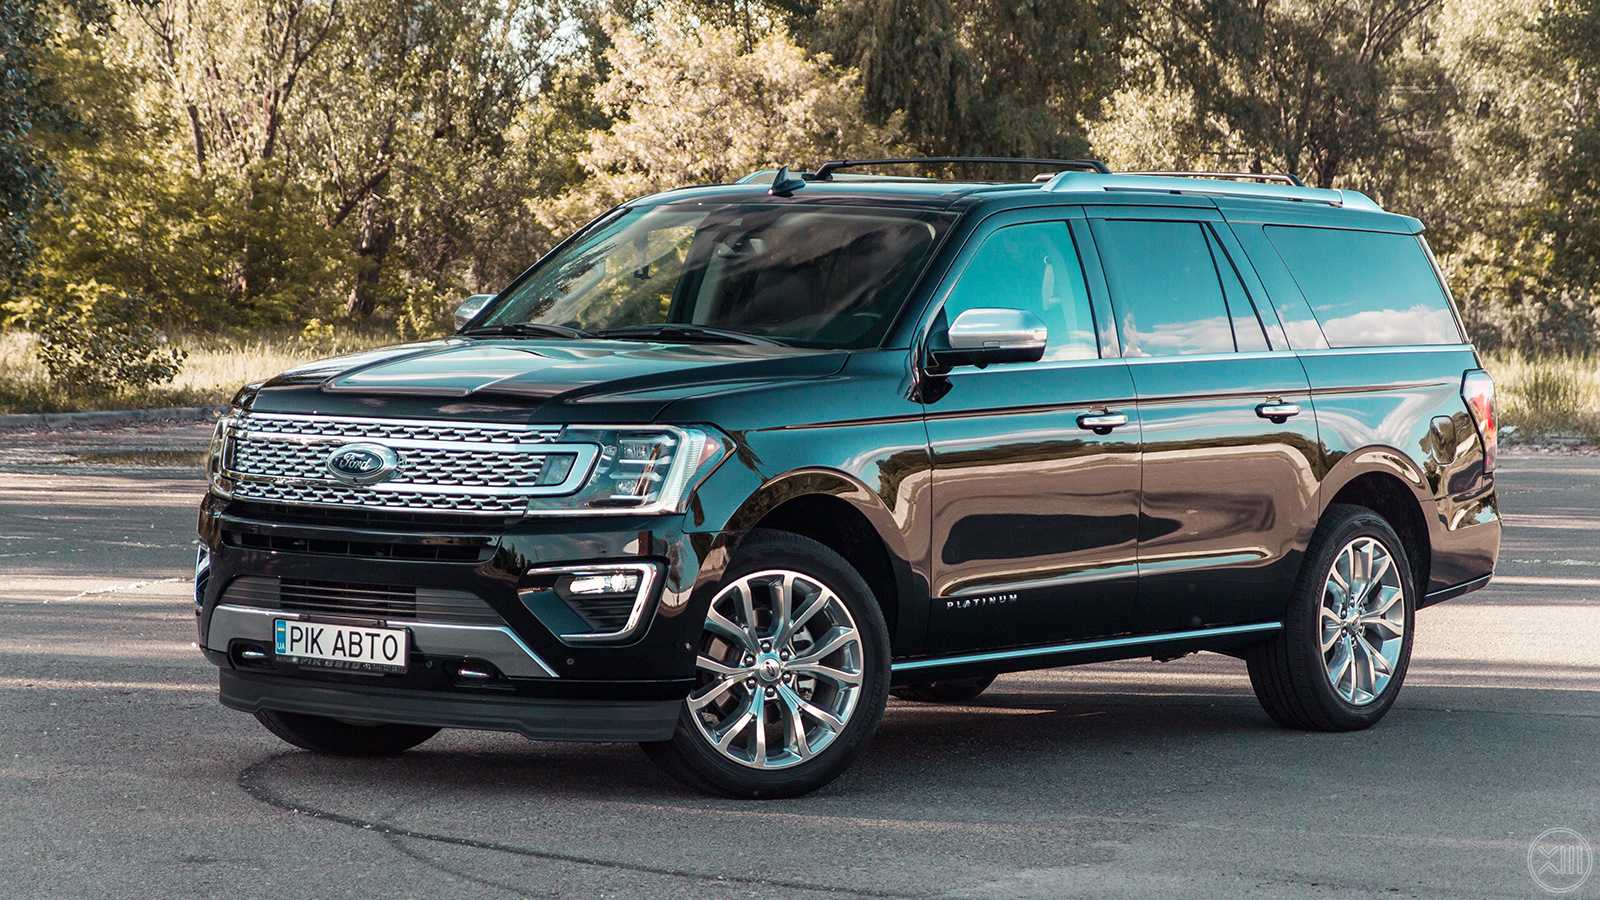 Ford bronco 2021 цены в россии +2 млн! фото, цены, дата выхода и характеристики